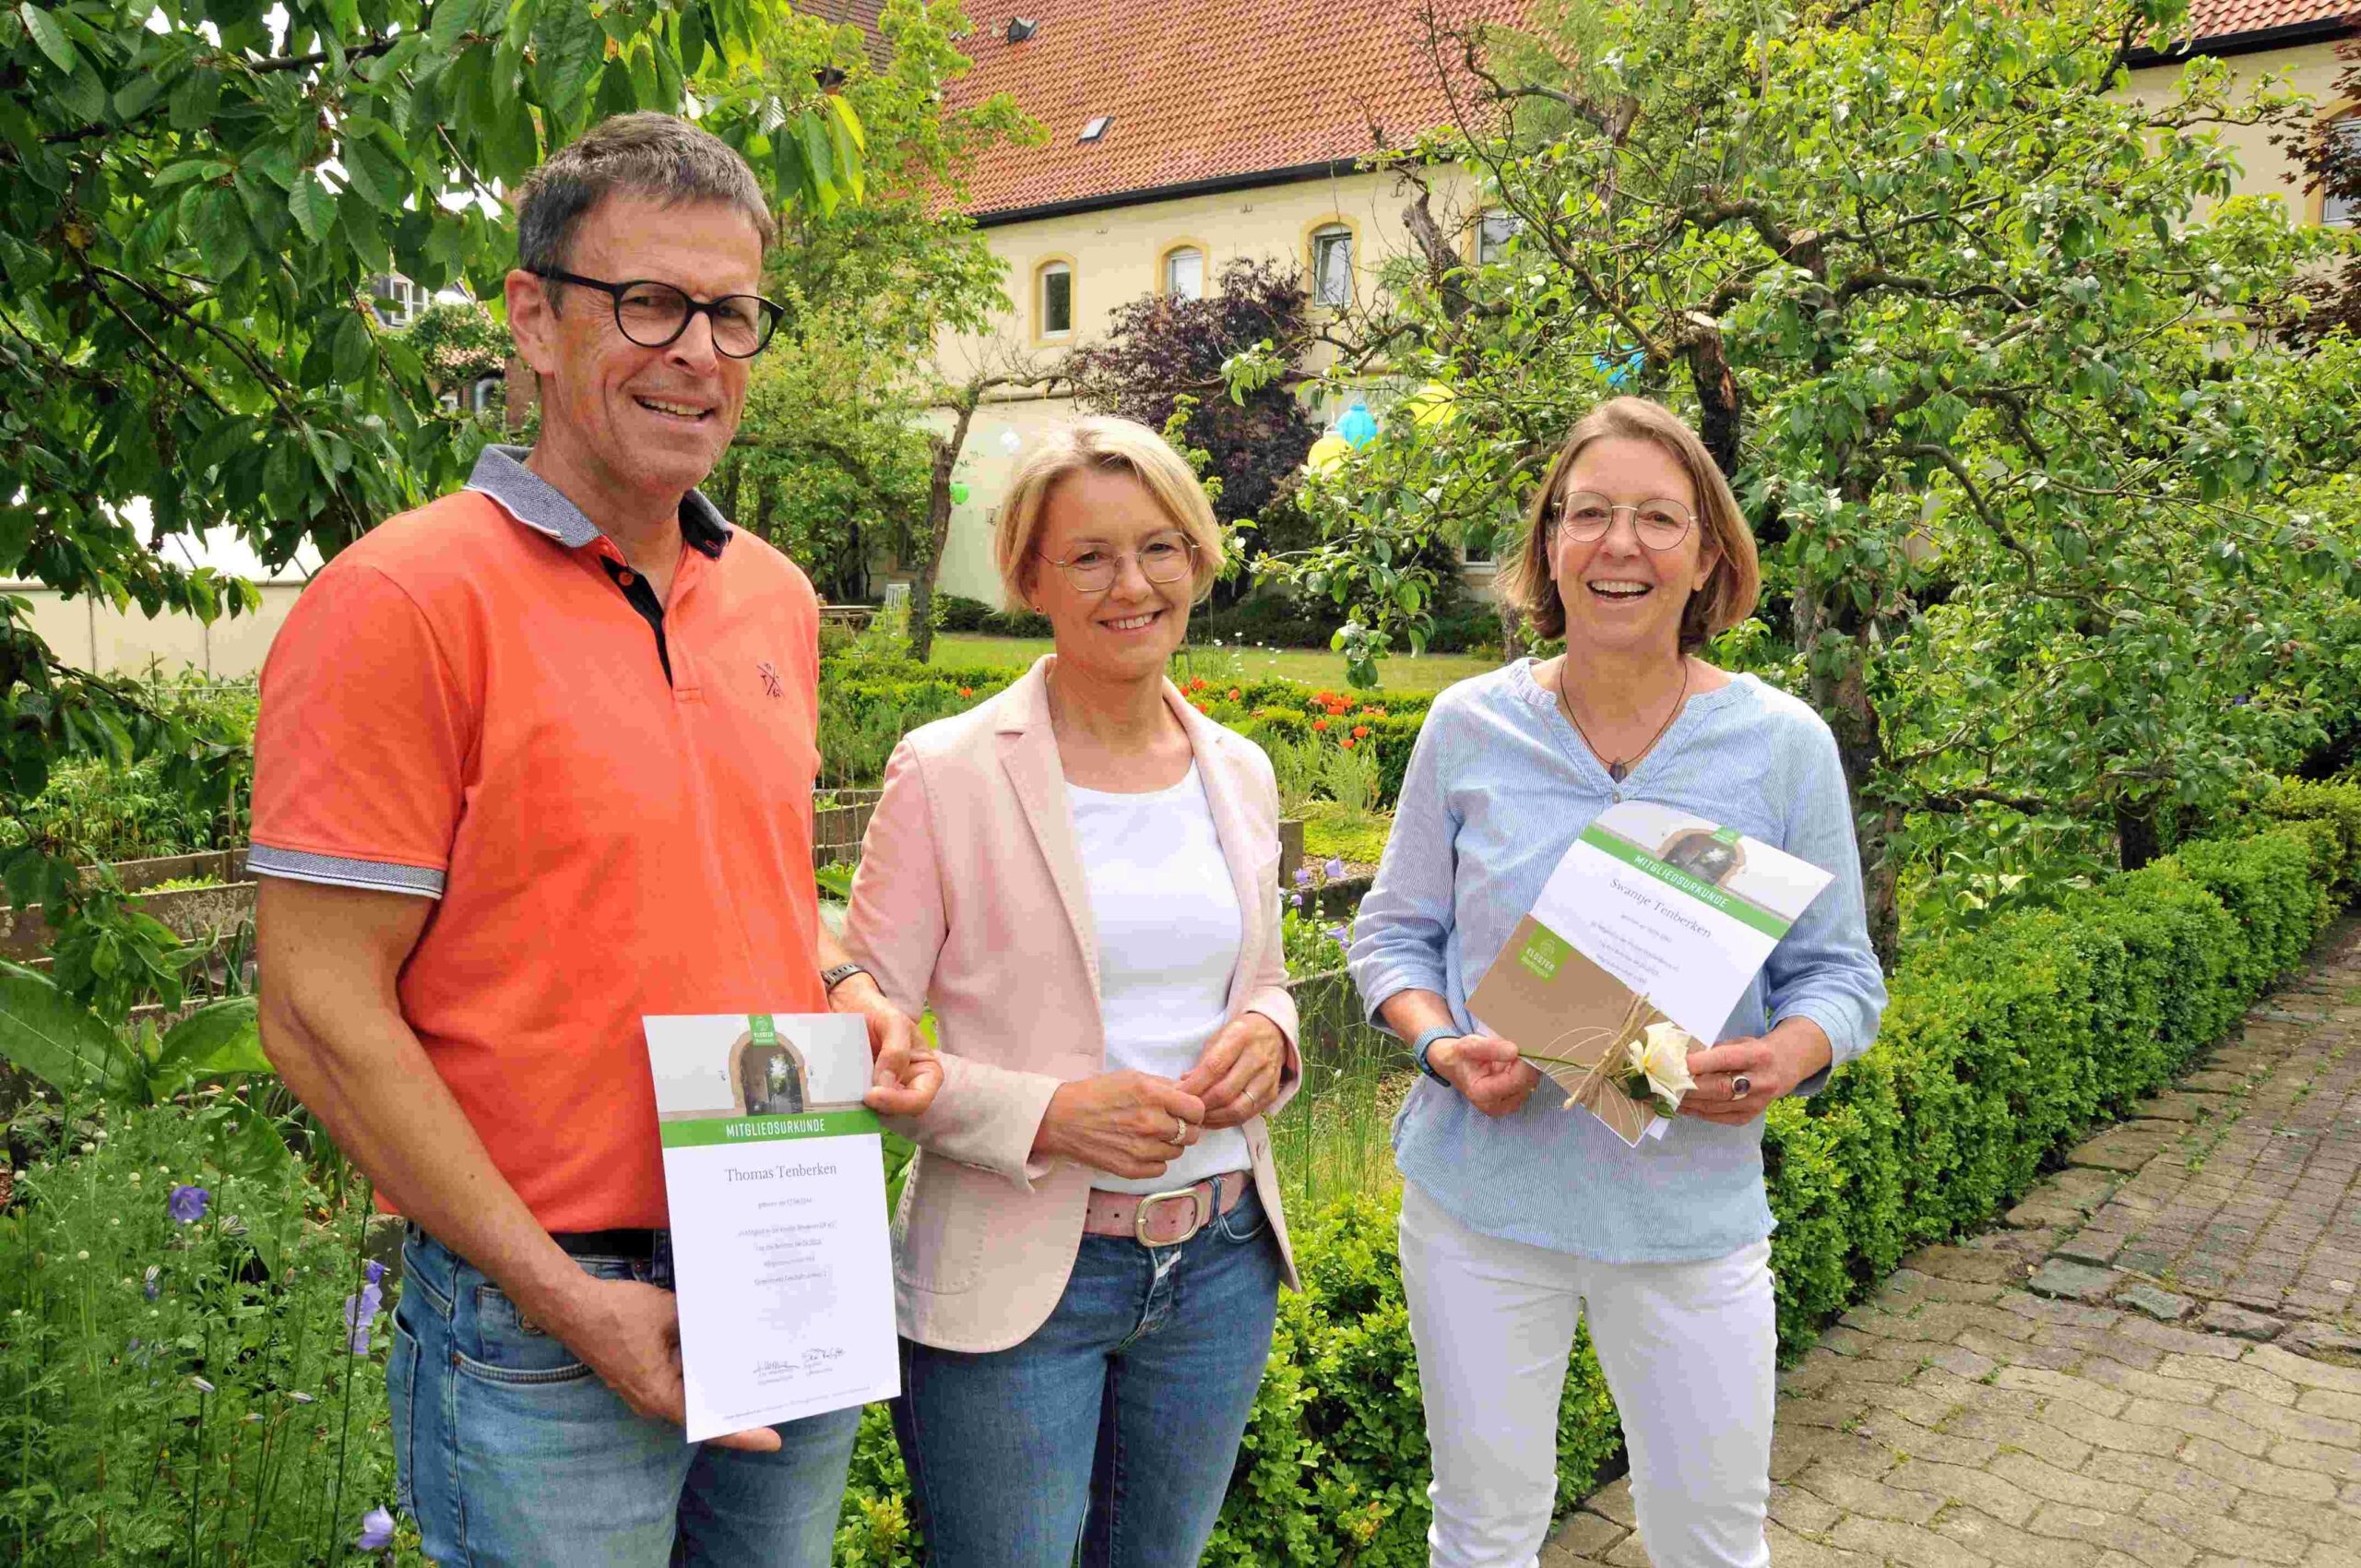 Thomas Tenberken, Sonja Rakete und Swantje Tenberken als Mitglied mit der Nr. 1000